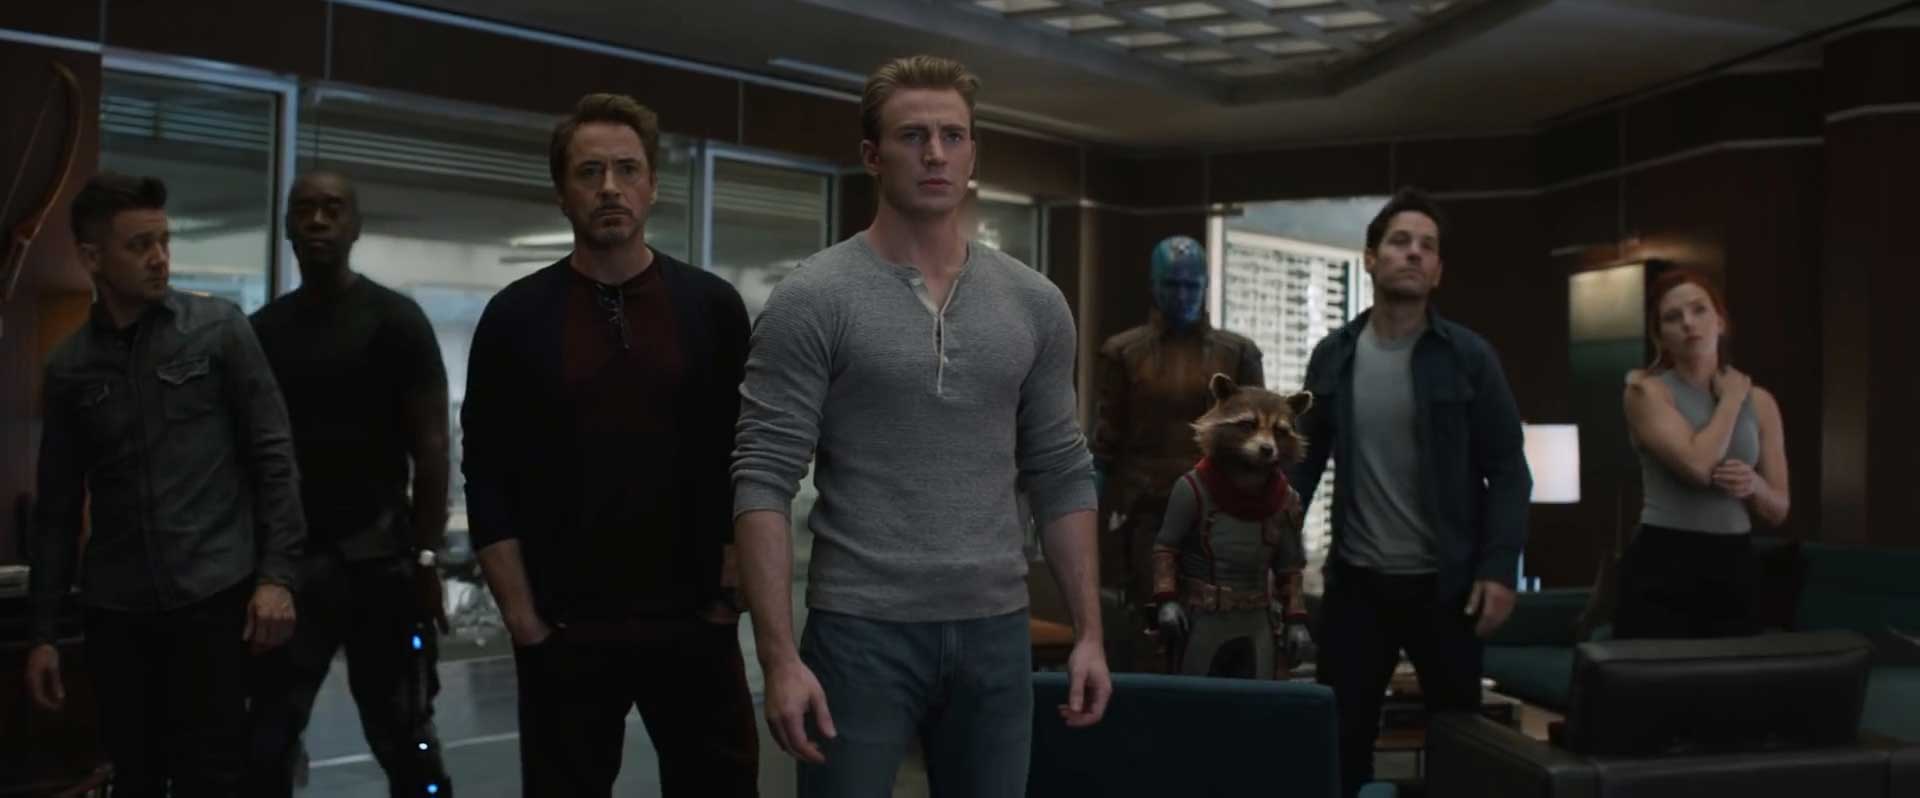 Avengers Endgame Special Look Trailer Breakdown - The Avengers Team Shot